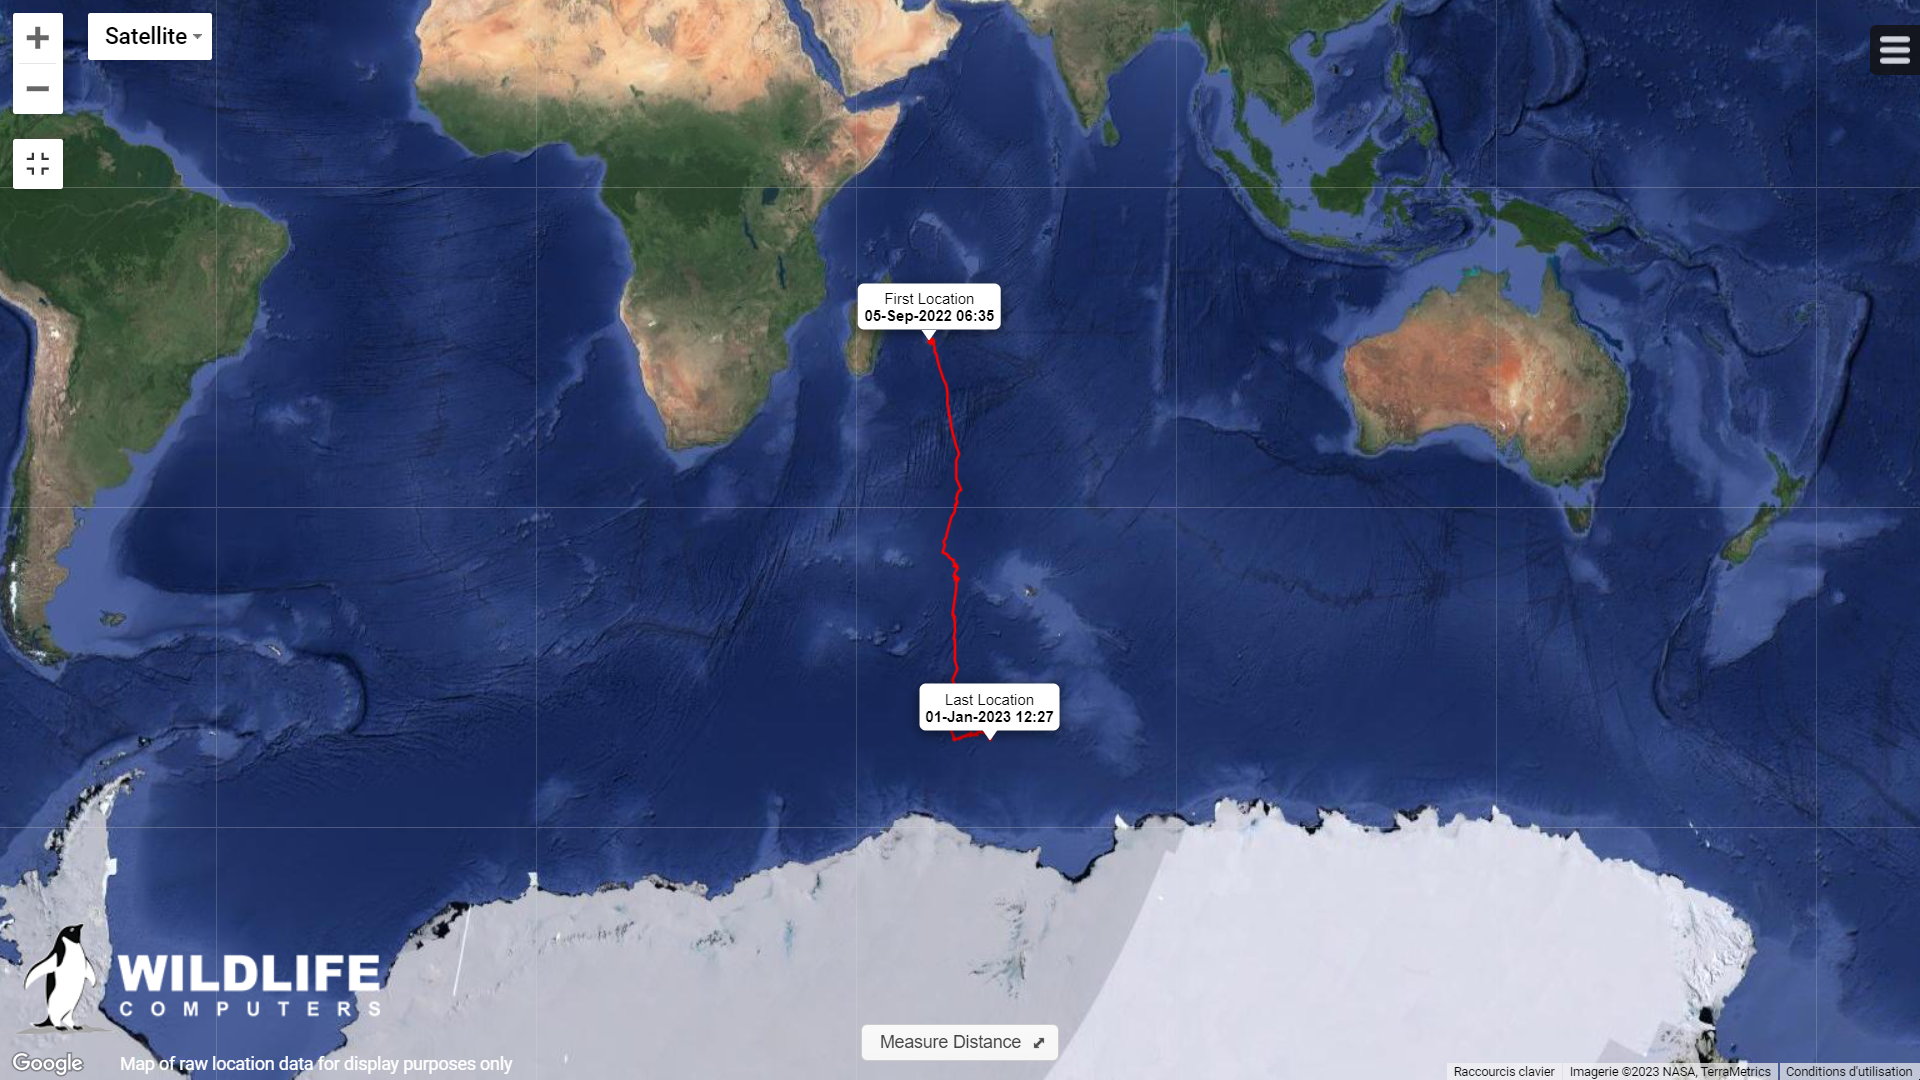 Le suivi satellitaire est une des quatre grandes méthodes de suivi scientifique. Sur cette carte, nous pouvons suivre le trajet de la baleine L’Endormie et de son baleineau © Wildlife Computers - Imagerie © NASA, TerraMetrics